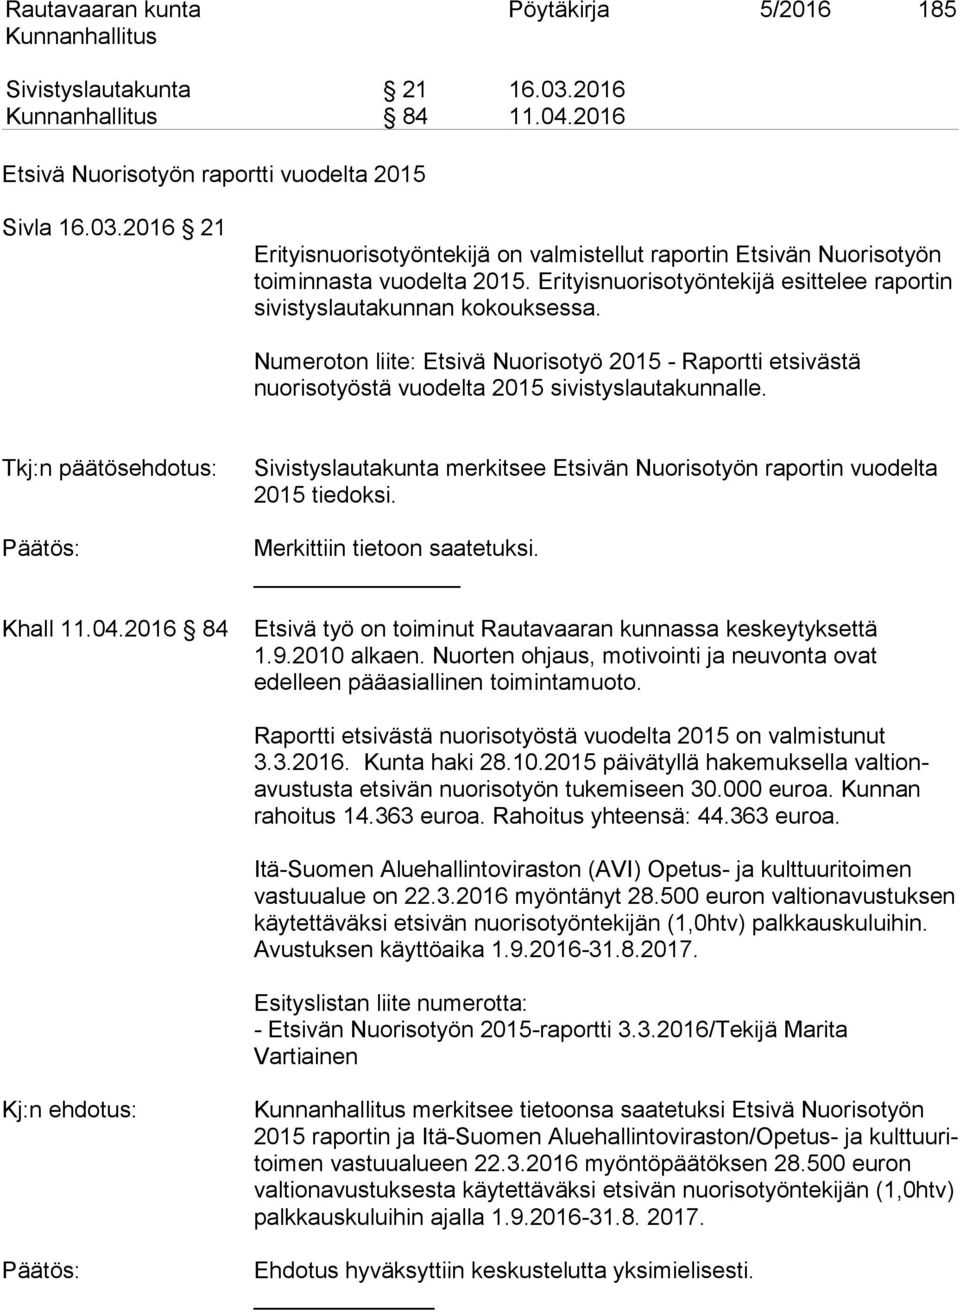 Tkj:n päätösehdotus: Khall 11.04.2016 84 Sivistyslautakunta merkitsee Etsivän Nuorisotyön raportin vuodelta 2015 tiedoksi. Merkittiin tietoon saatetuksi.